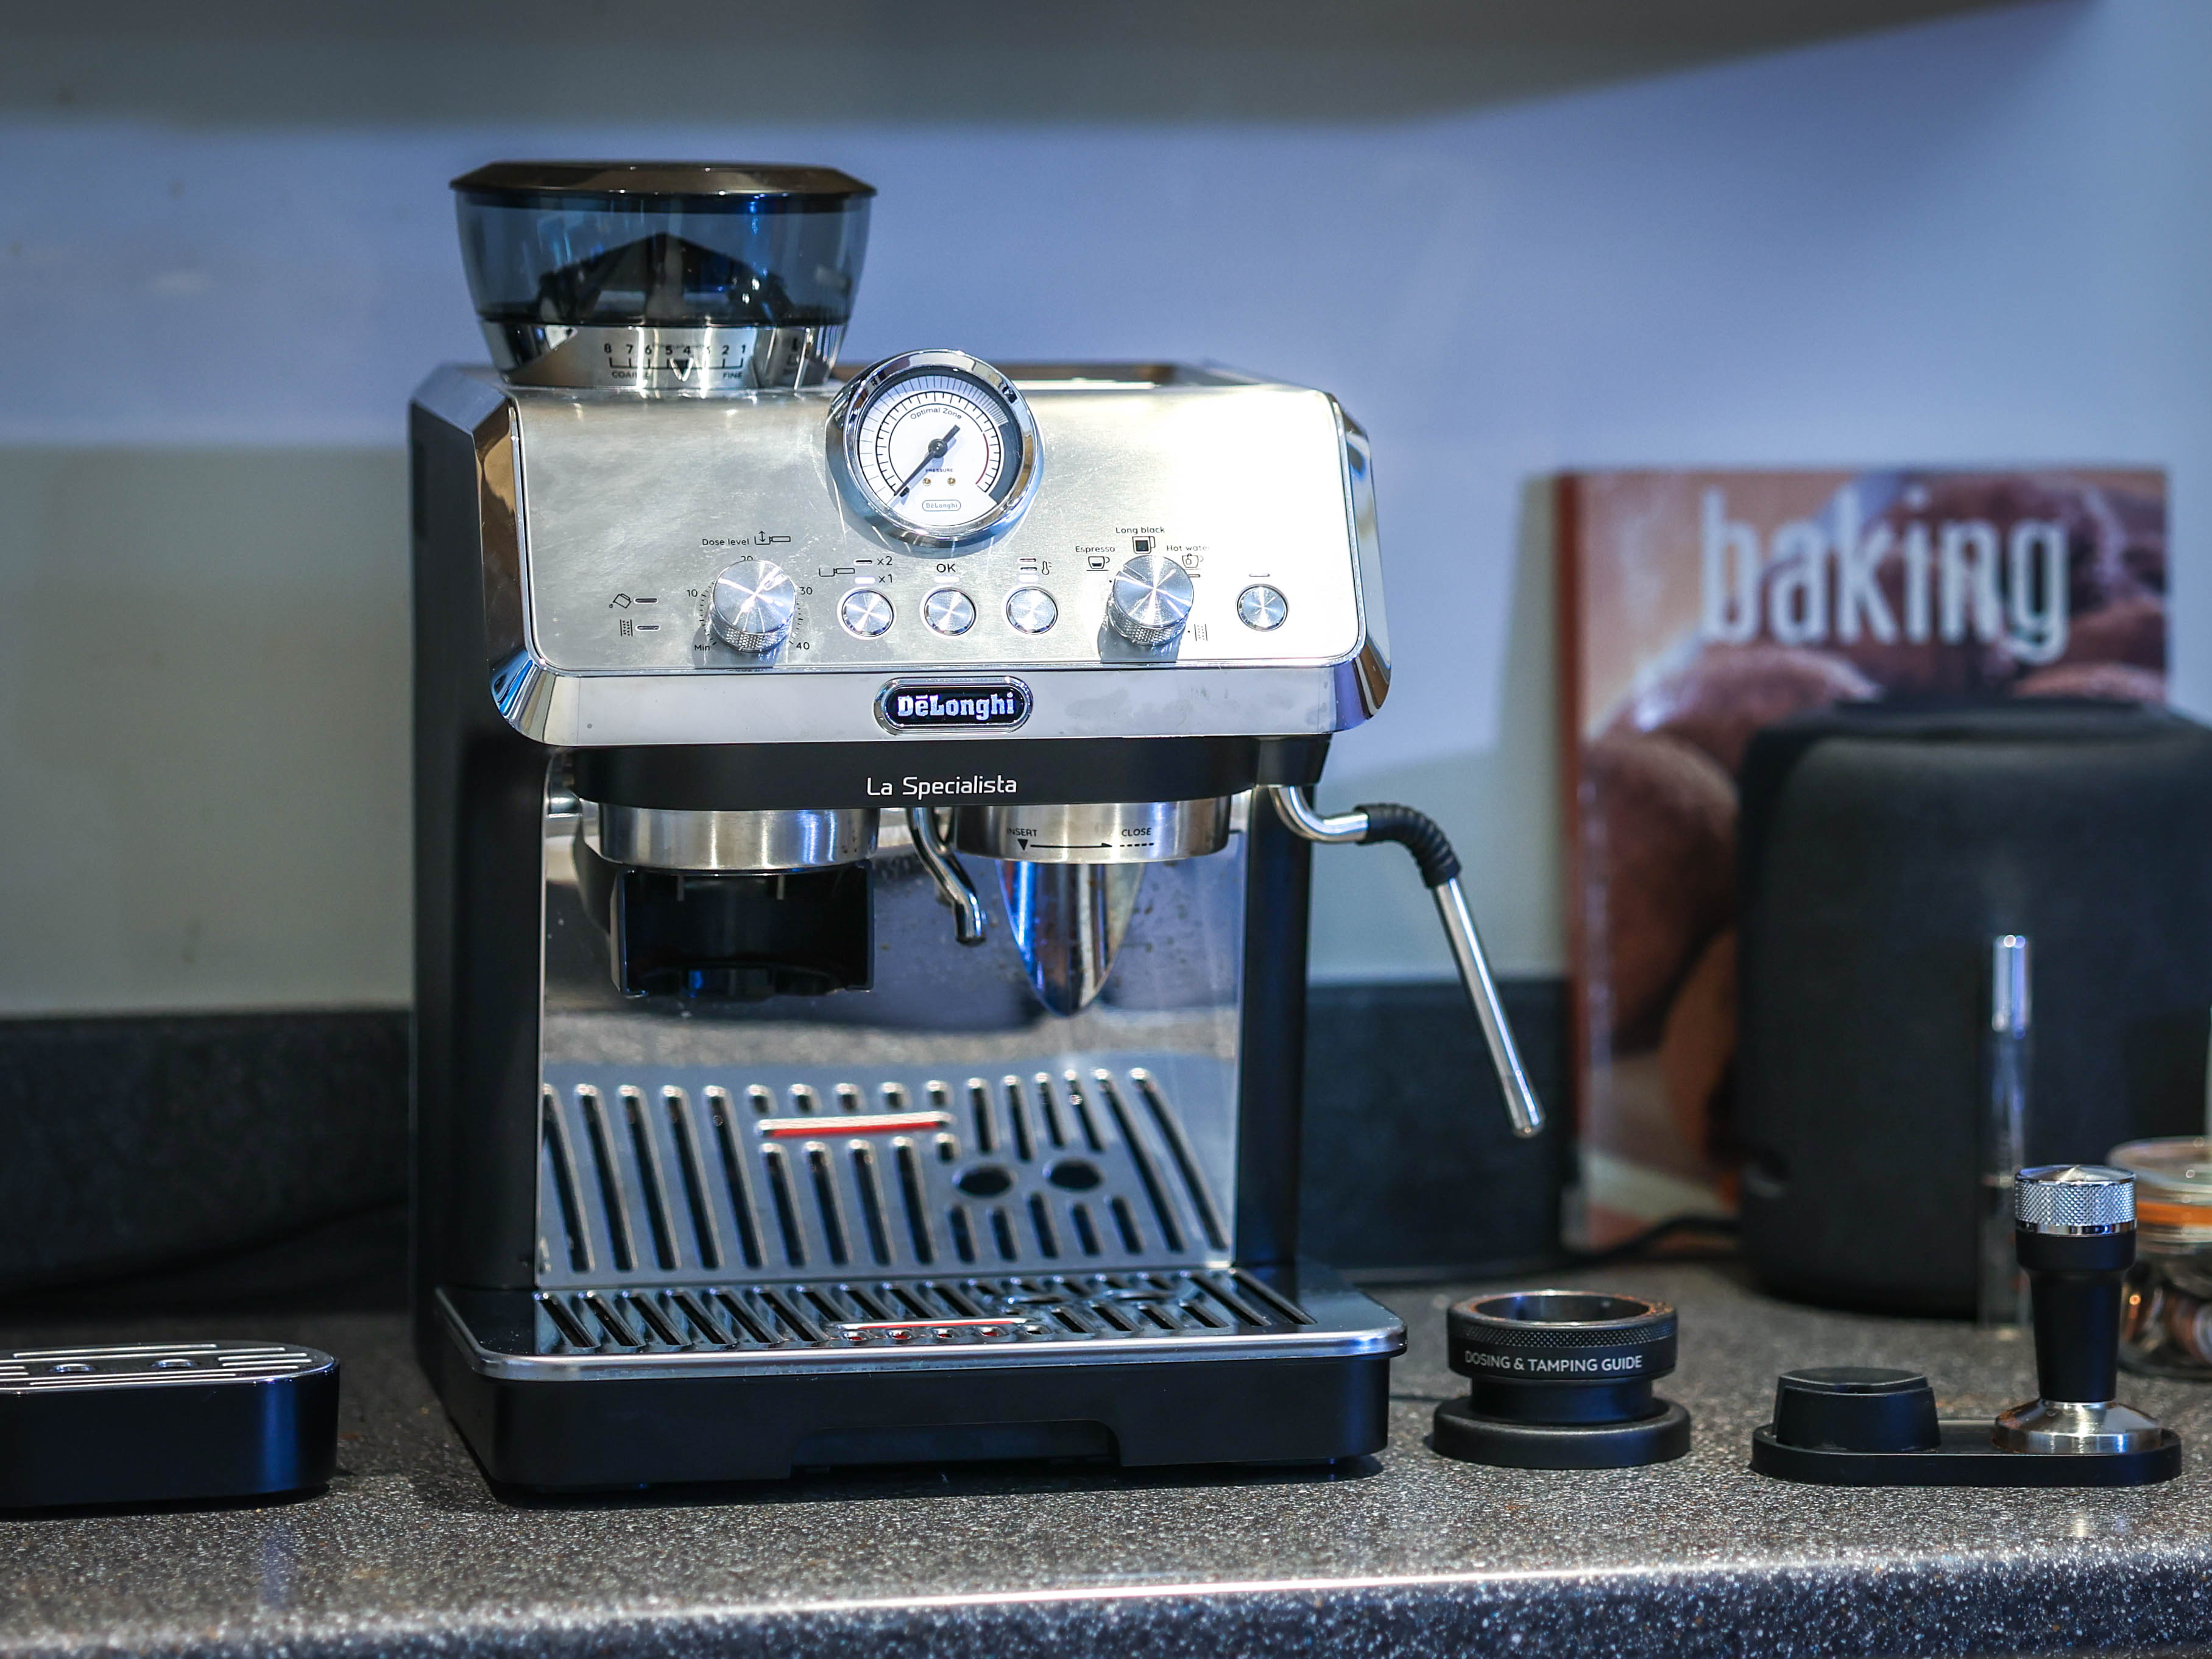 DeLonghi Magnifica S Smart Espresso Machine - Silver & Black – The  Culinarium